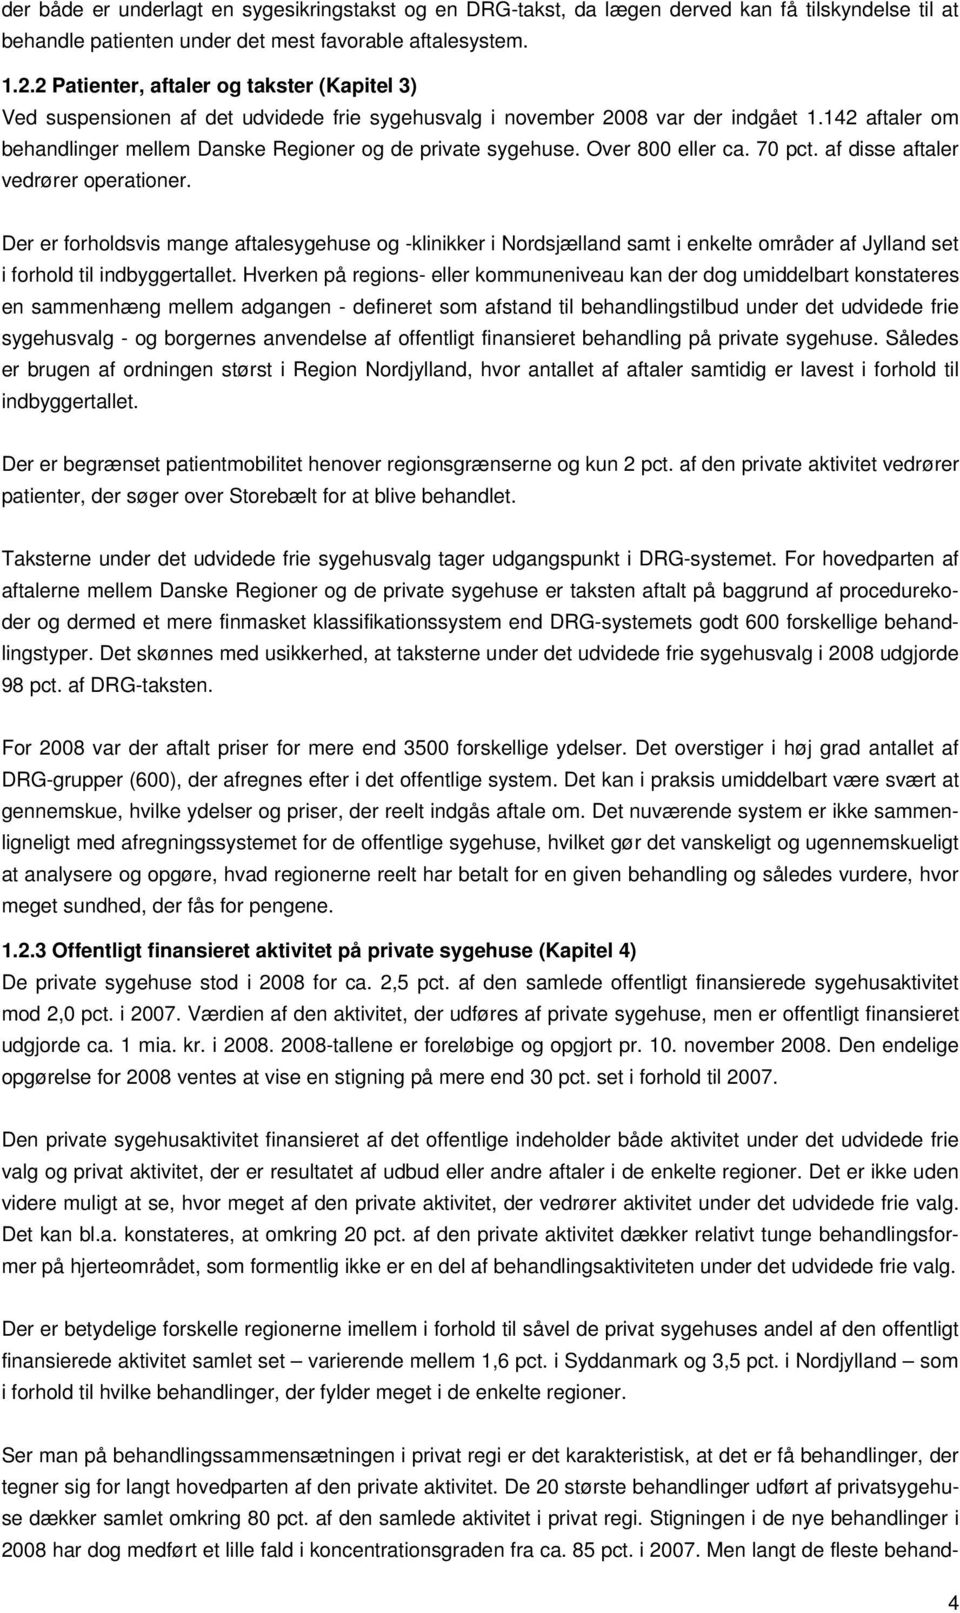 142 aftaler om behandlinger mellem Danske Regioner og de private sygehuse. Over 800 eller ca. 70 pct. af disse aftaler vedrører operationer.